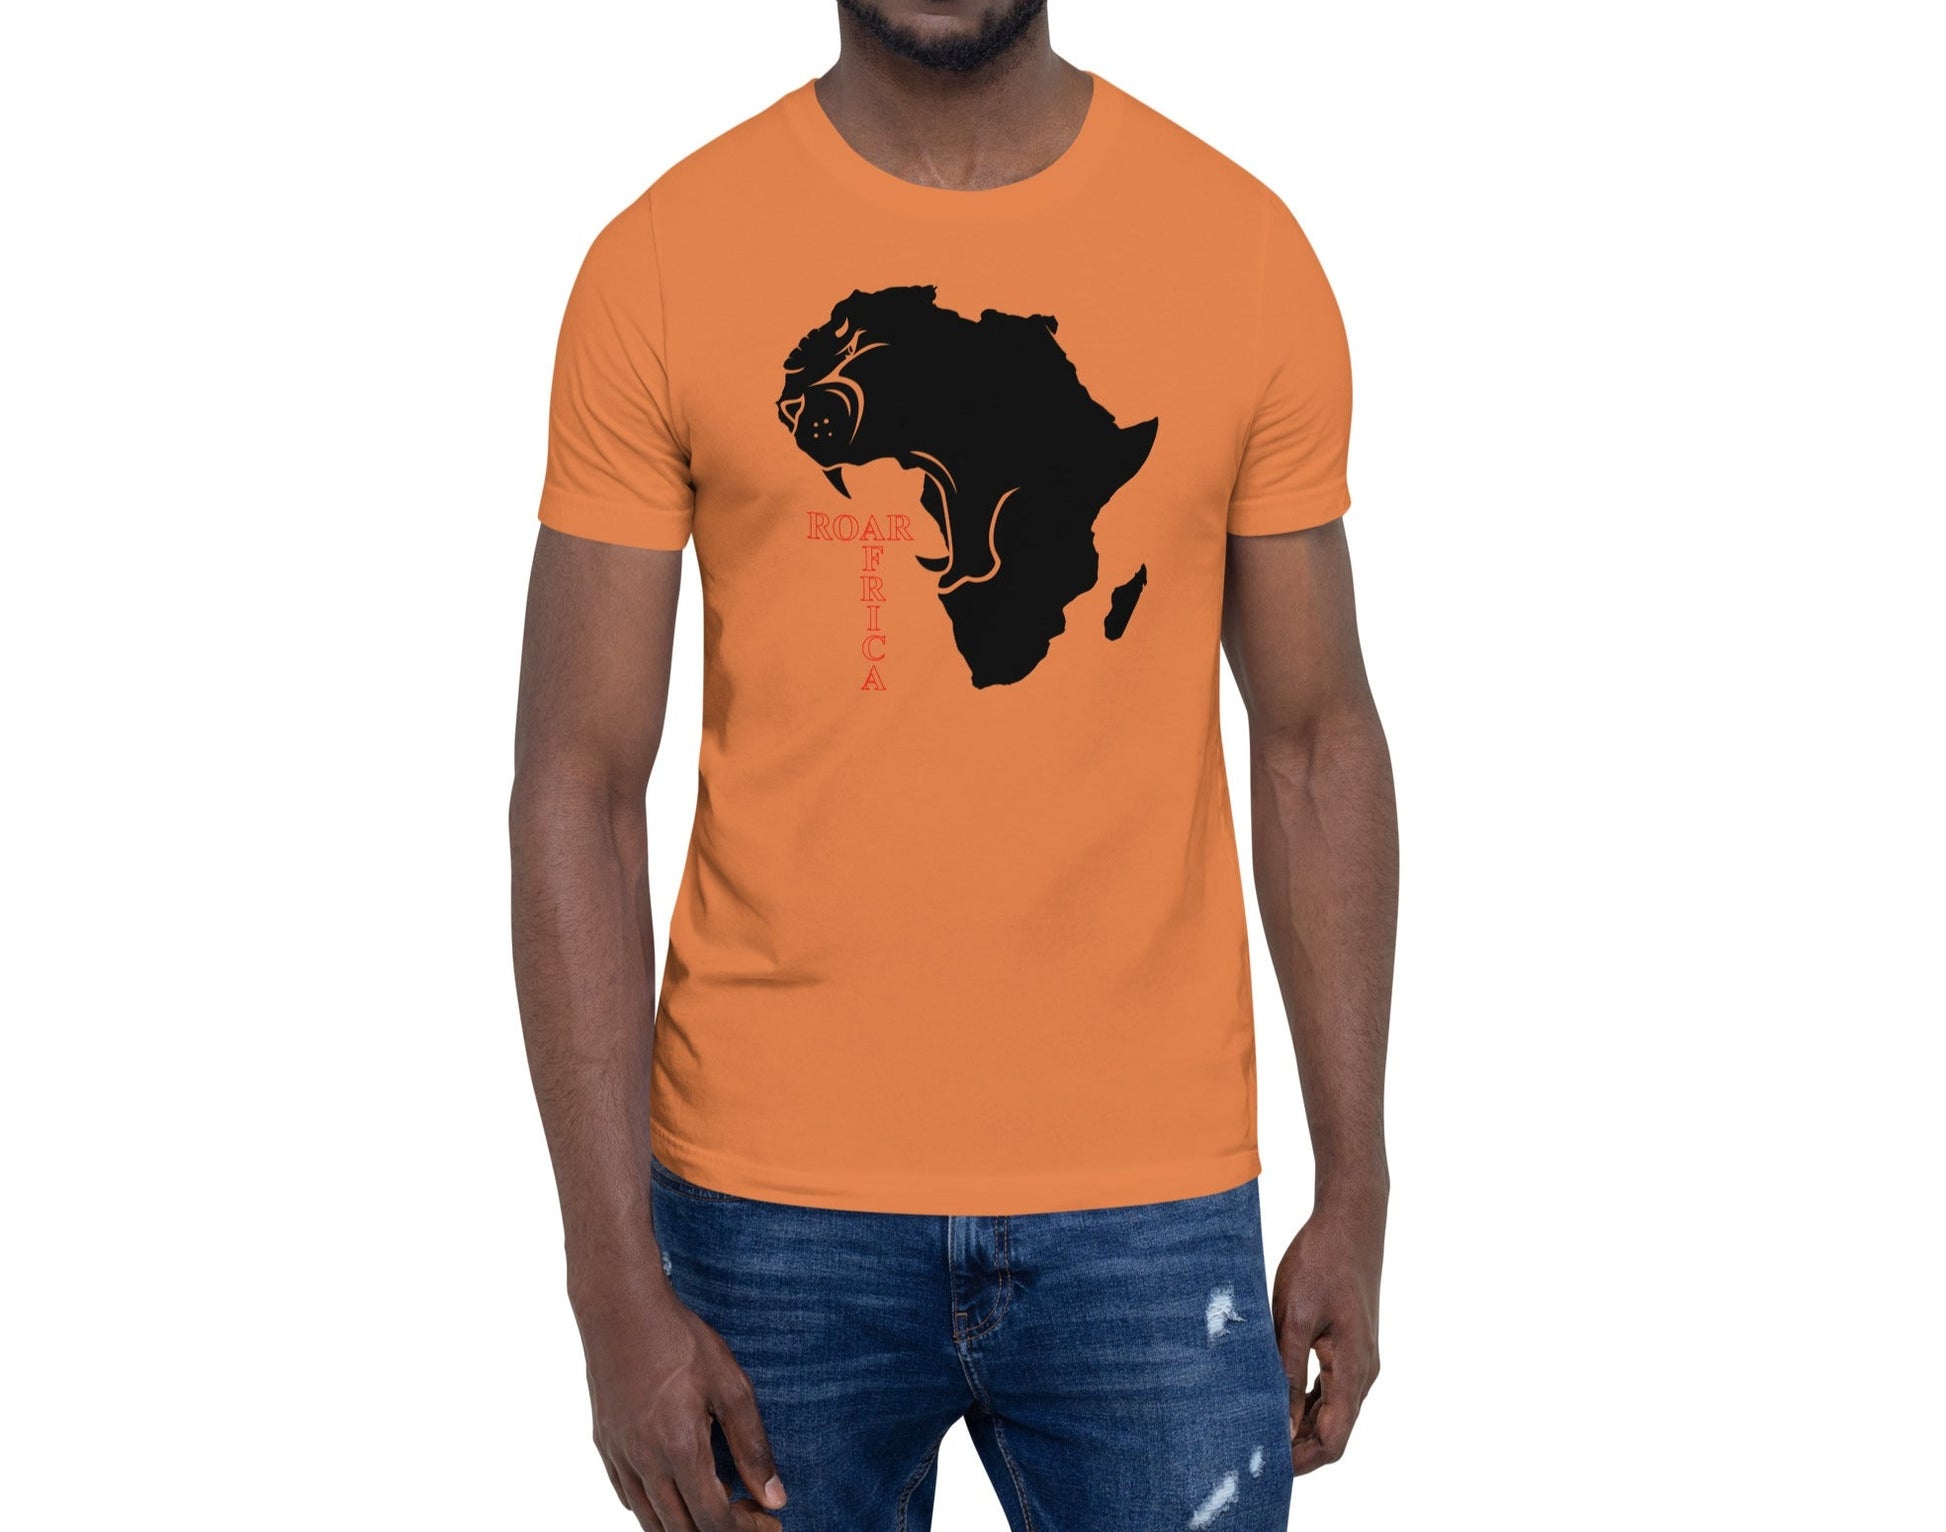 Roar Africa Shirt, Roaring African Lion inside Africa Map T-Shirt | Unisex - bukulu